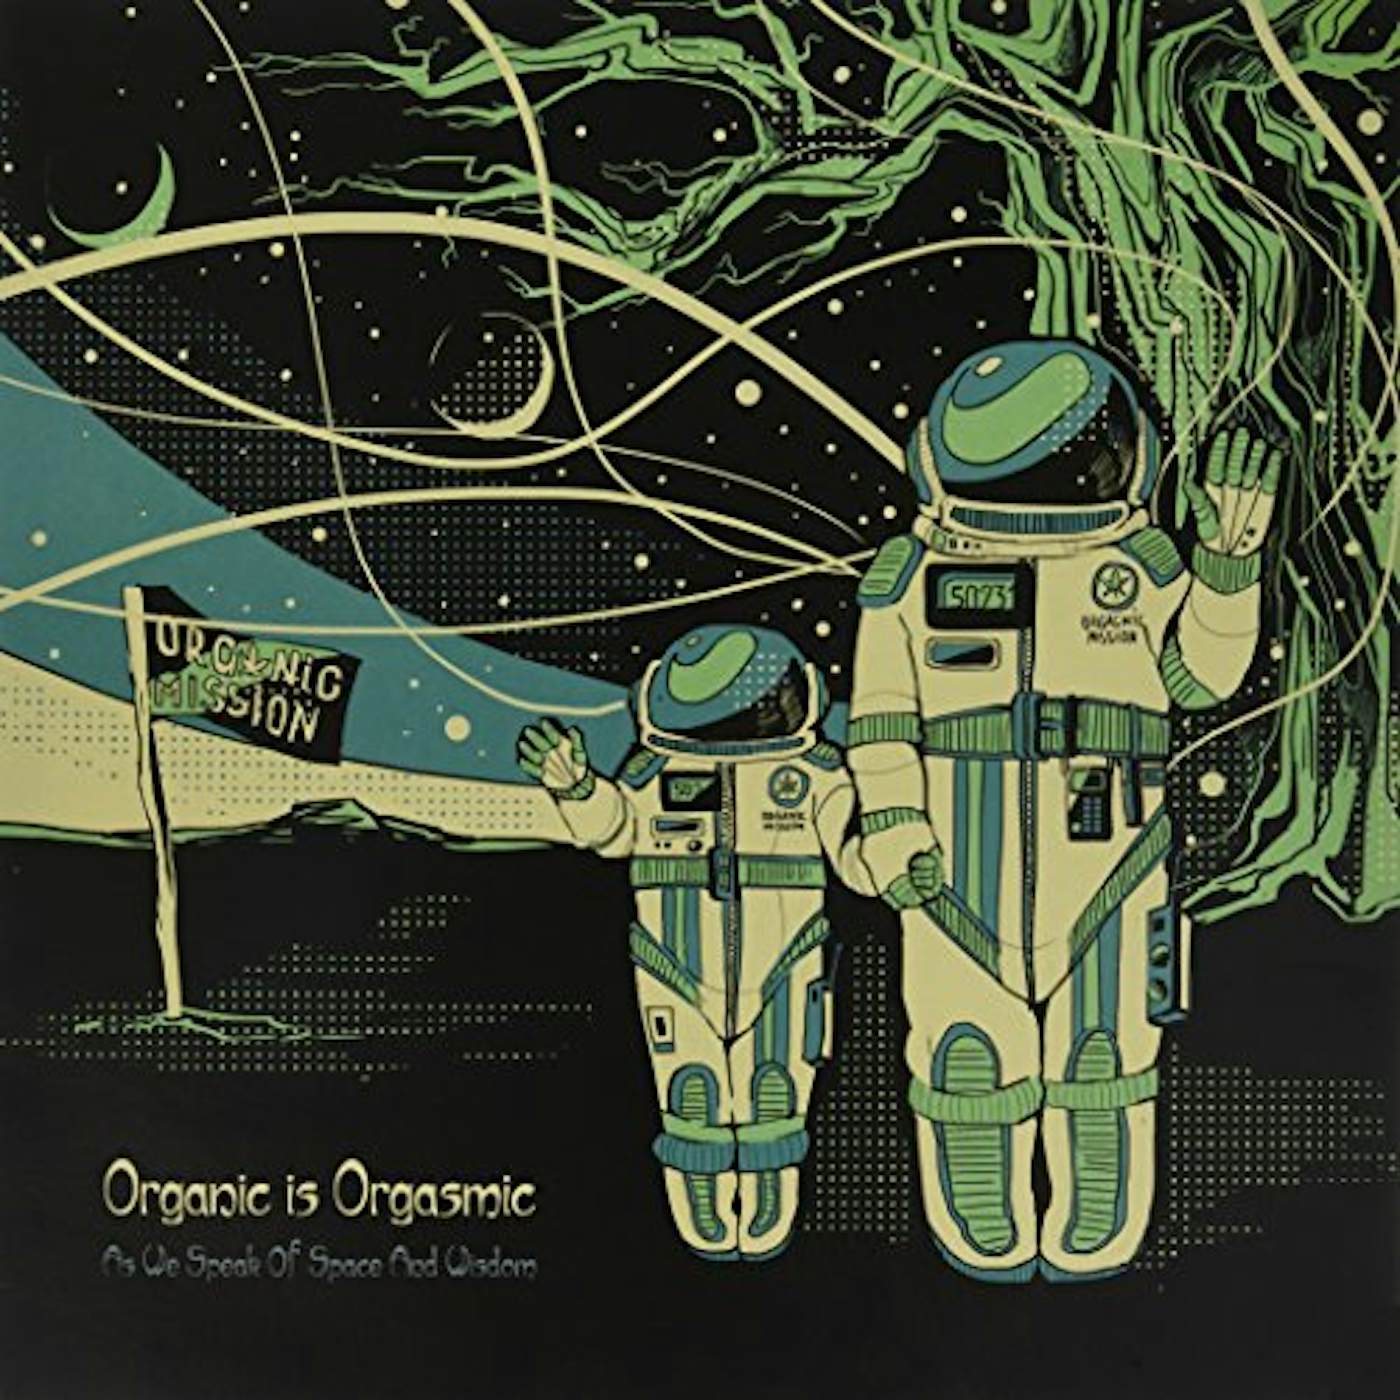 Organic Is Orgasmic As We Speak of Space and Wisdom Vinyl Record